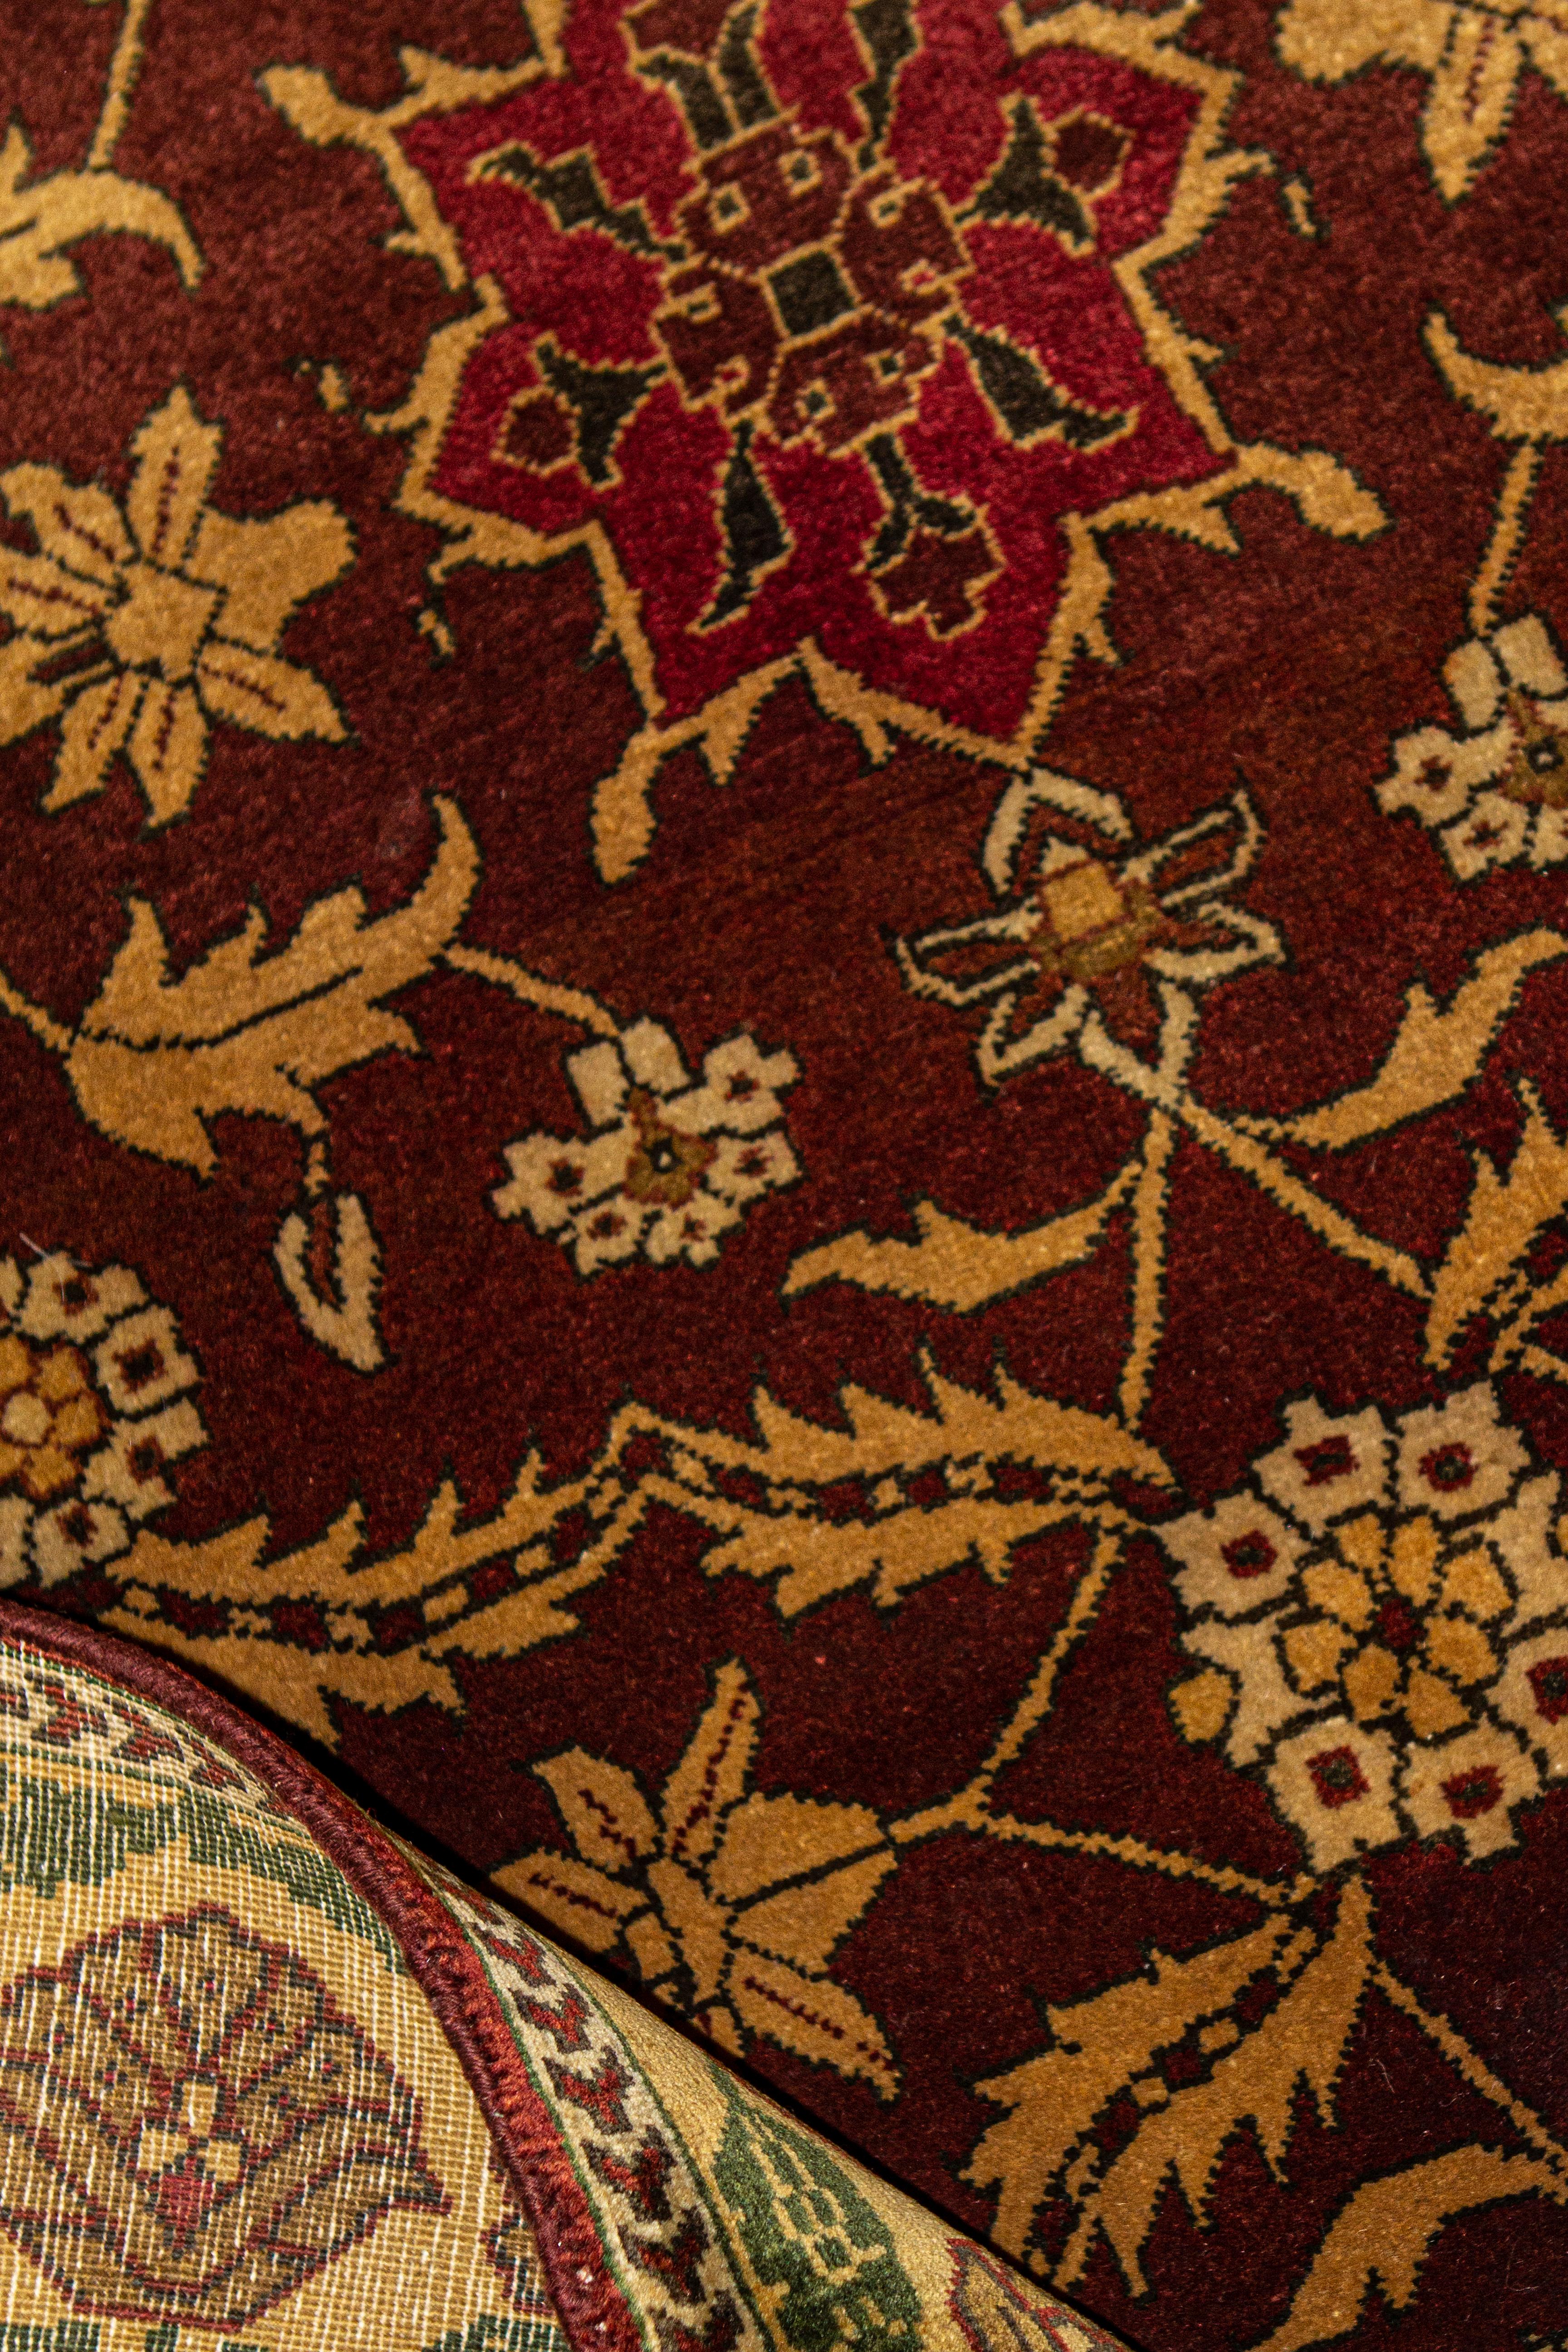 Forts d'une longue histoire, les tapis et moquettes anciens tissés en Inde sont parmi les plus fascinants de tous les tapis d'Orient. L'inspiration de cette collection provient d'authentiques motifs orientaux, tissés à la main dans le style